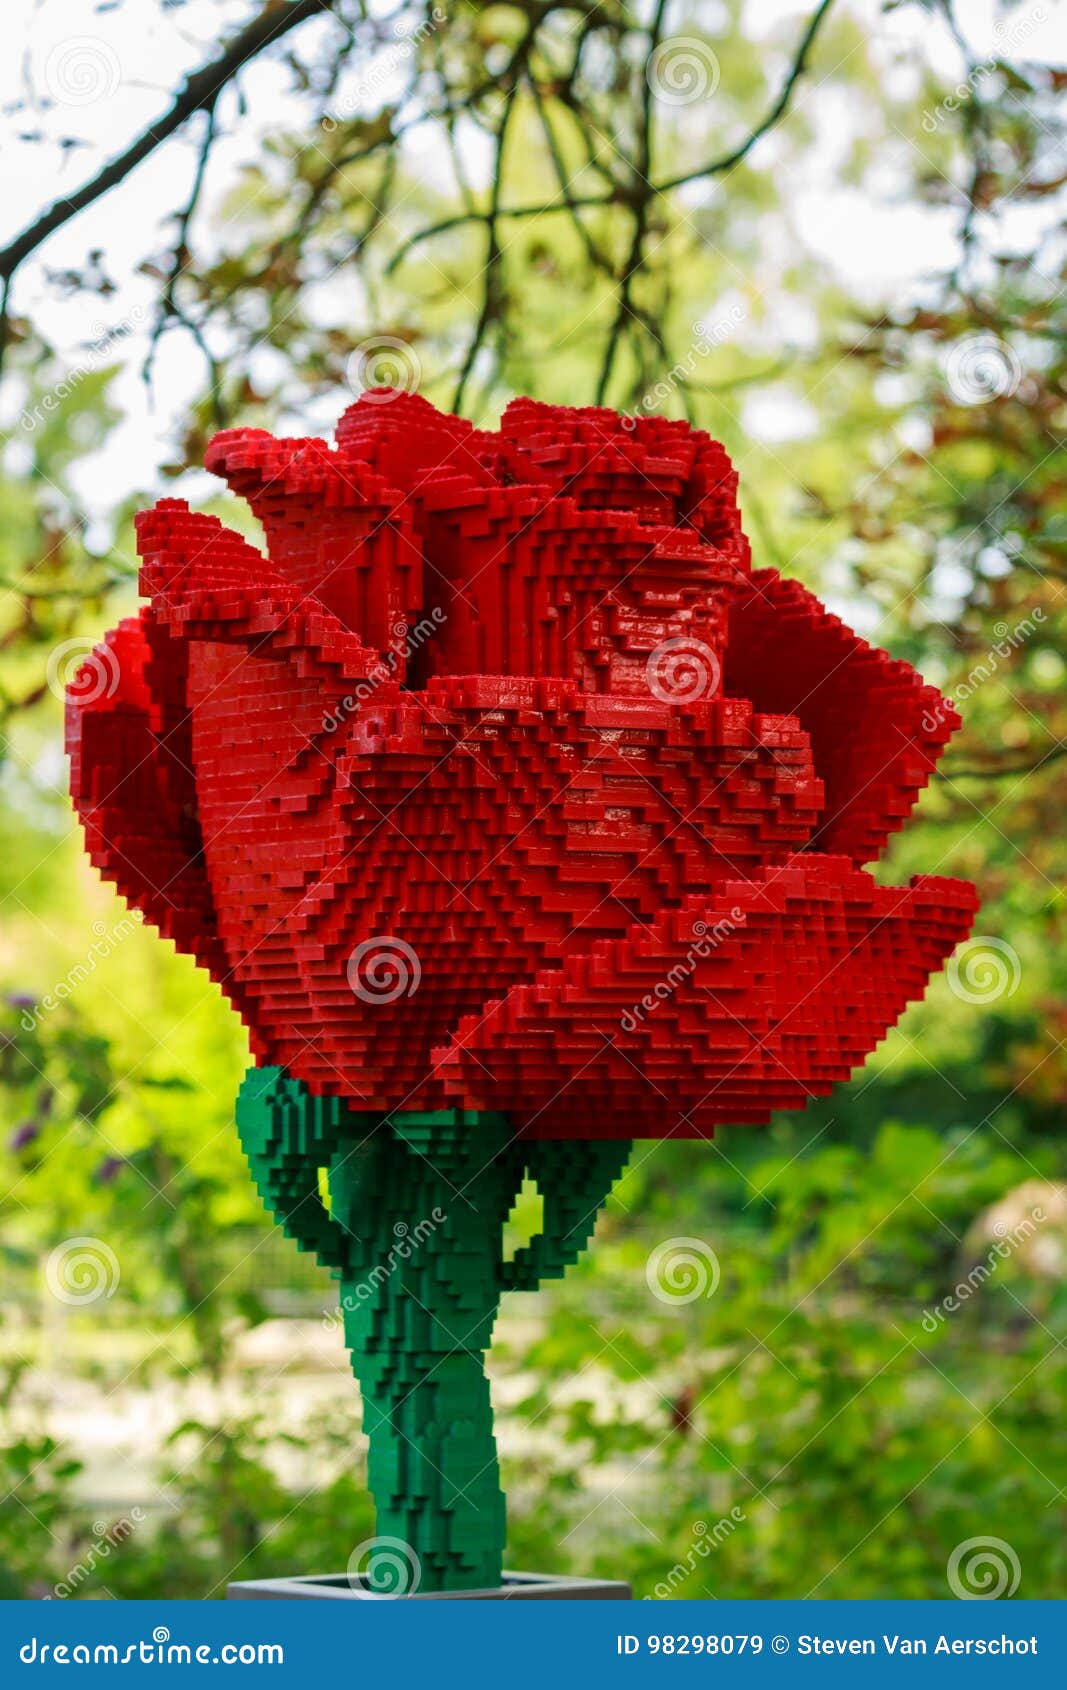 Rosa Rossa in Lego Nello Zoo Di Planckendael Immagine Stock Editoriale -  Immagine di fiore, mattoni: 98298079